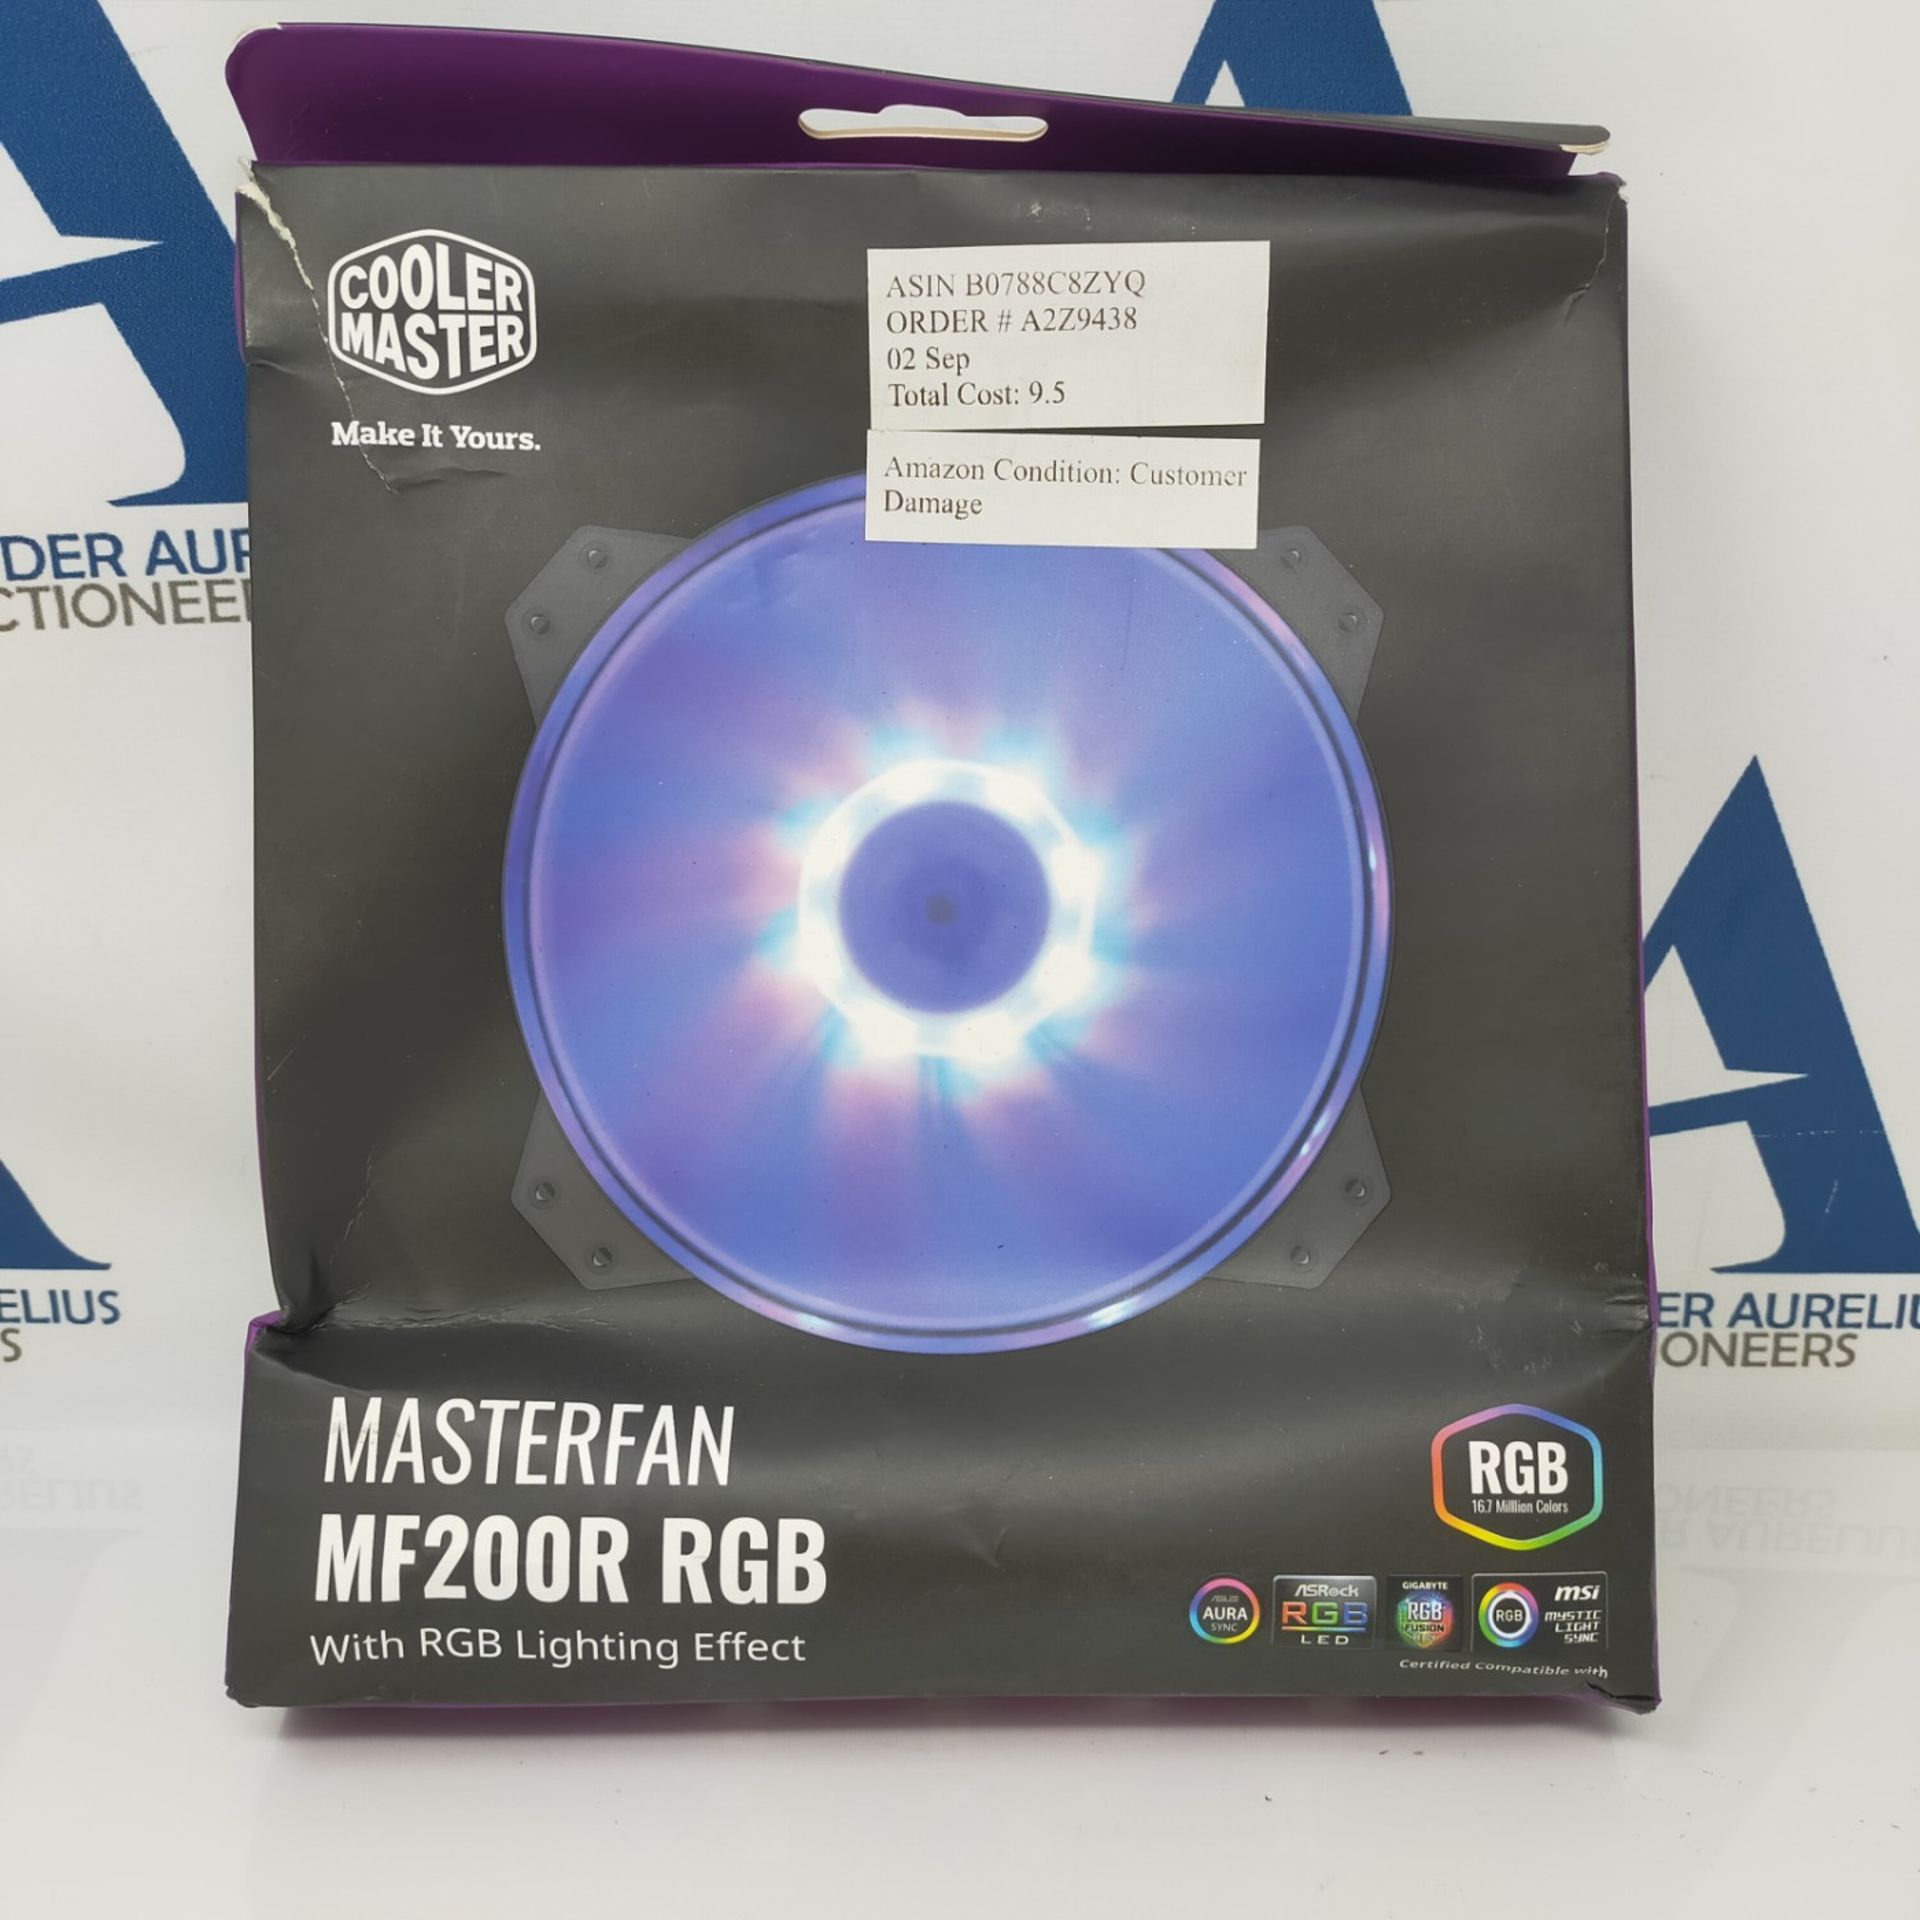 Cooler Master MasterFan MF200R RGB (R4-200R-08FC-R1): ventola PWM RGB da 200Â mm, cu - Bild 2 aus 3